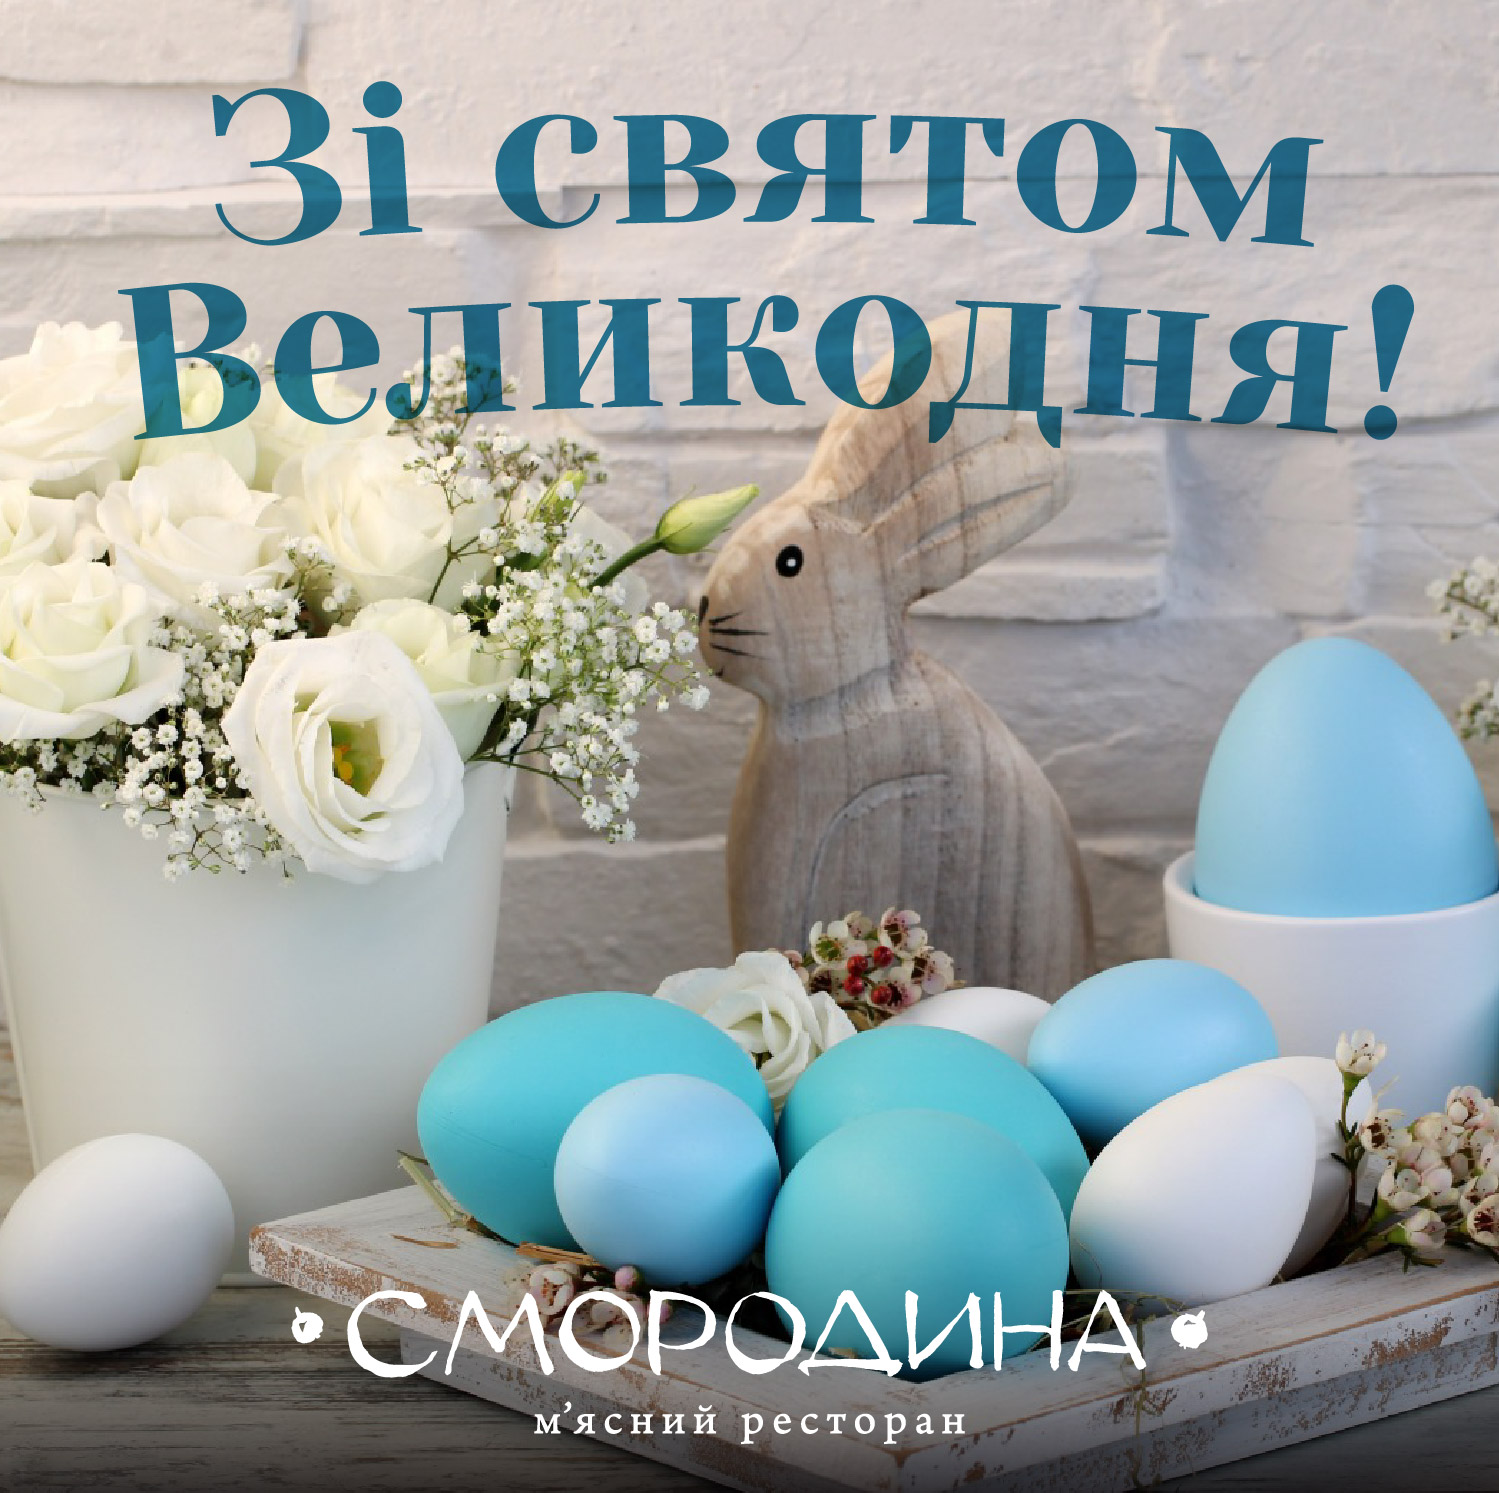 Поздравляем вас с великим праздником Пасхи Христовой!